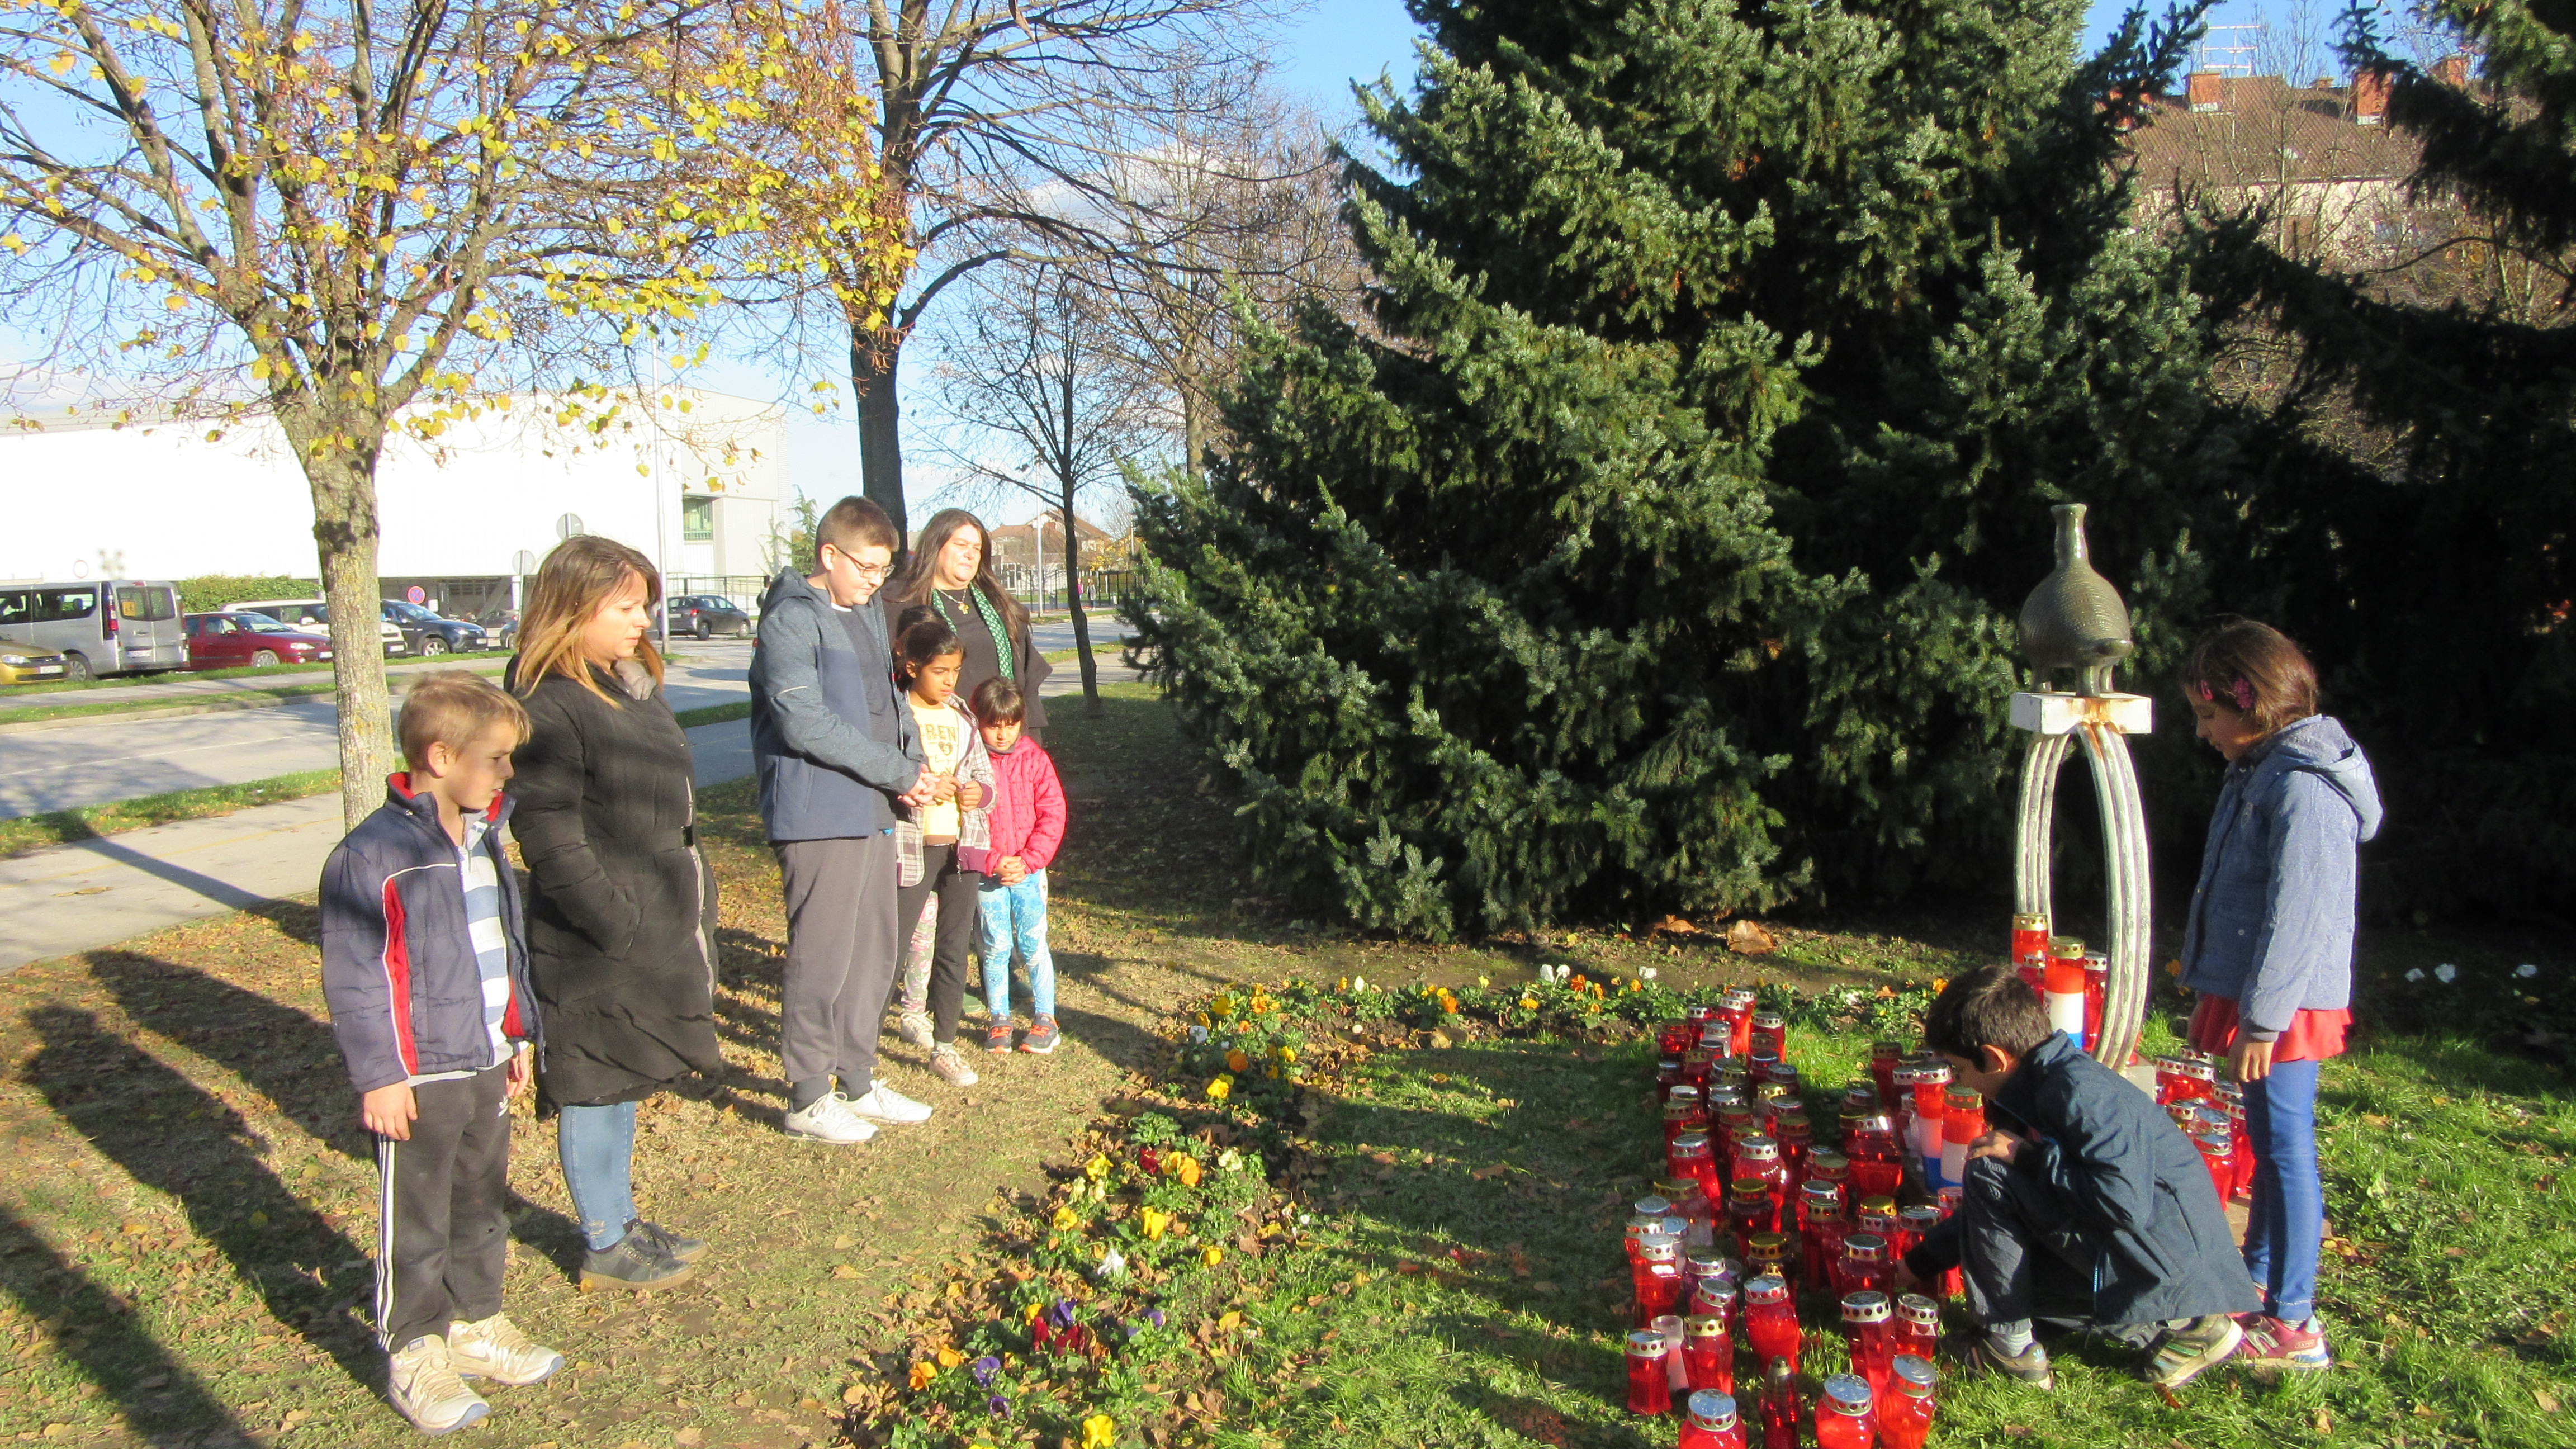 Obilježavanje Dana sjećanja na žrtvu Vukovara - paljenje lampiona ispred spomenika Vučedolskoj golubici